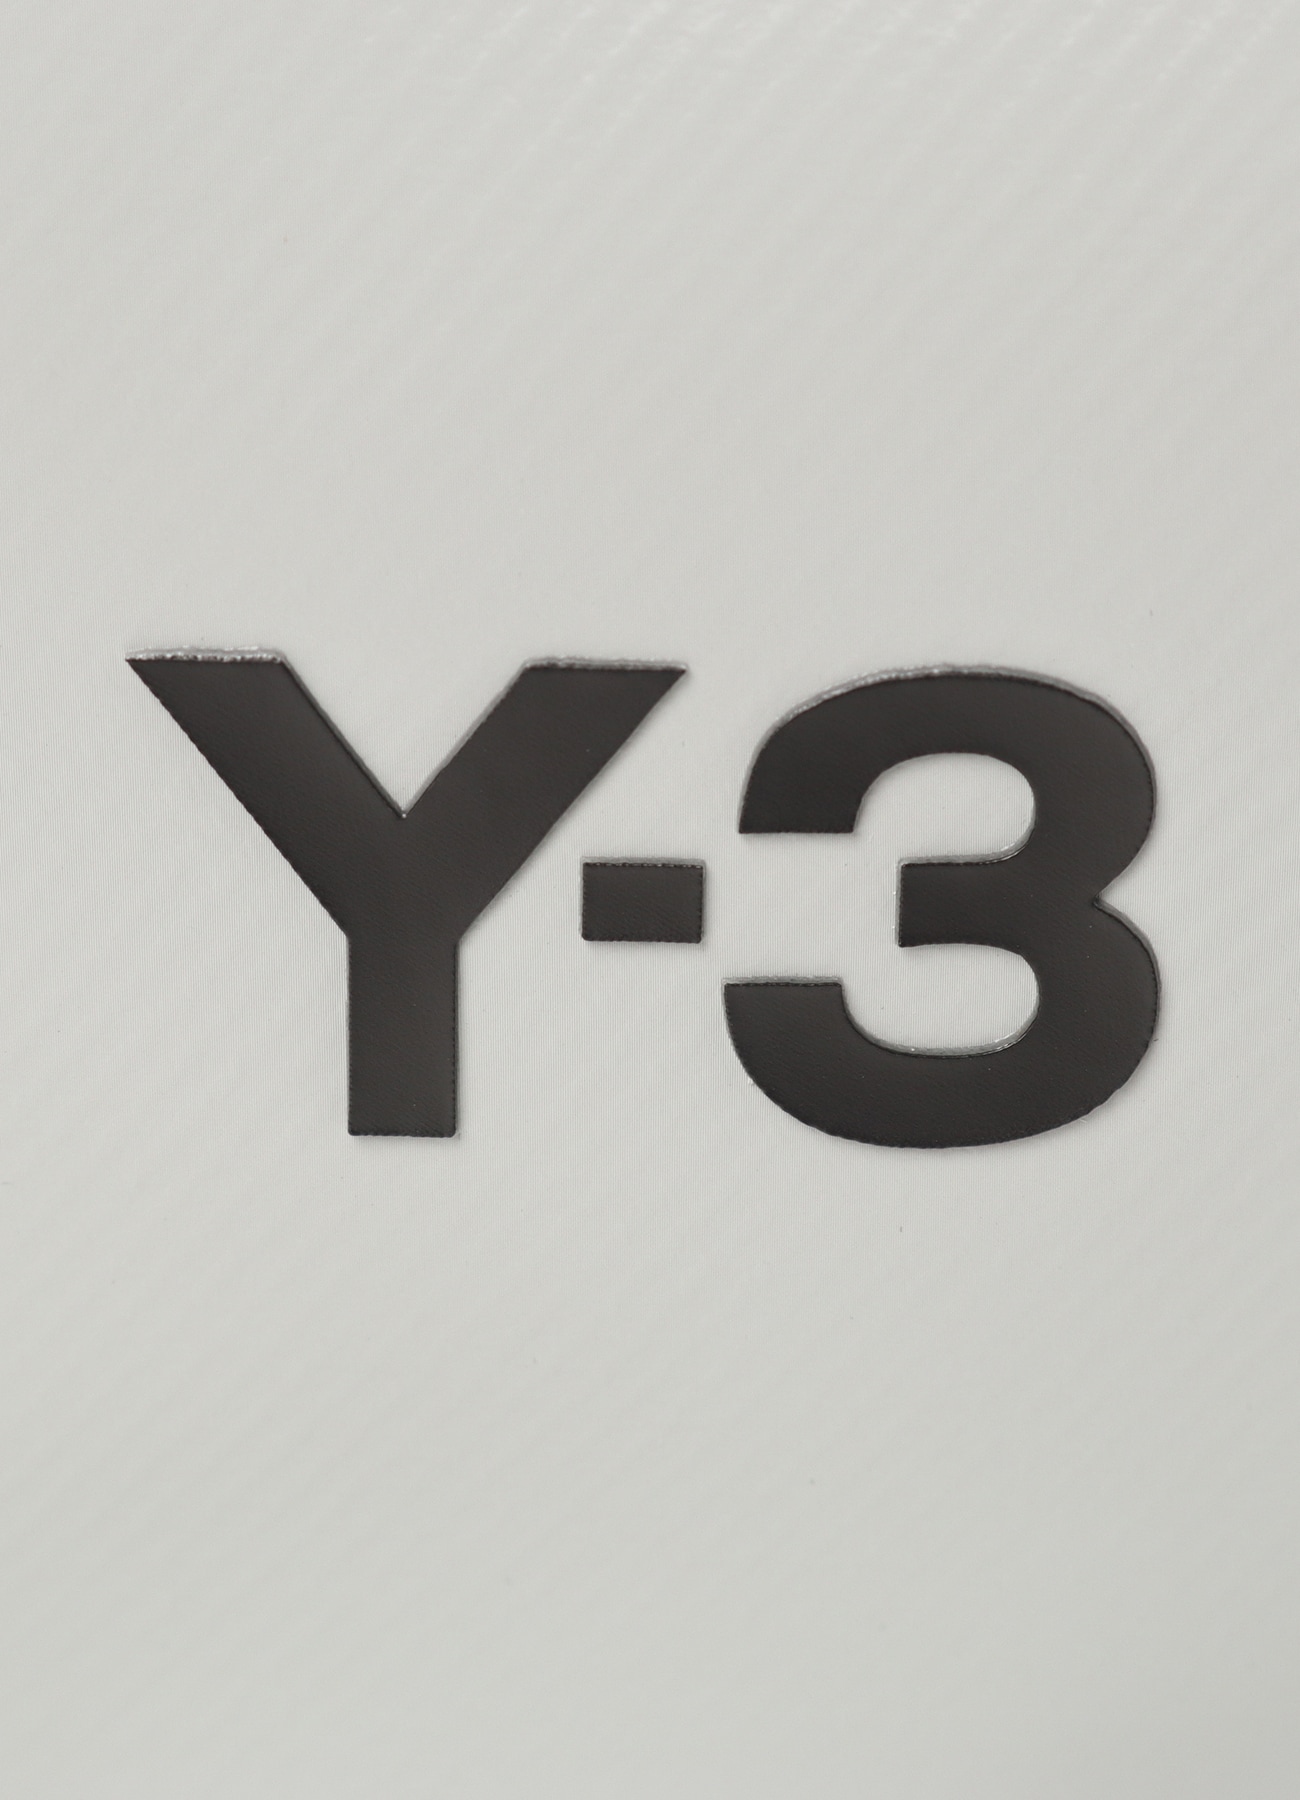 Y-3 X BODY BAG(FREE SIZE Grey): Y-3｜WILDSIDE YOHJI YAMAMOTO 